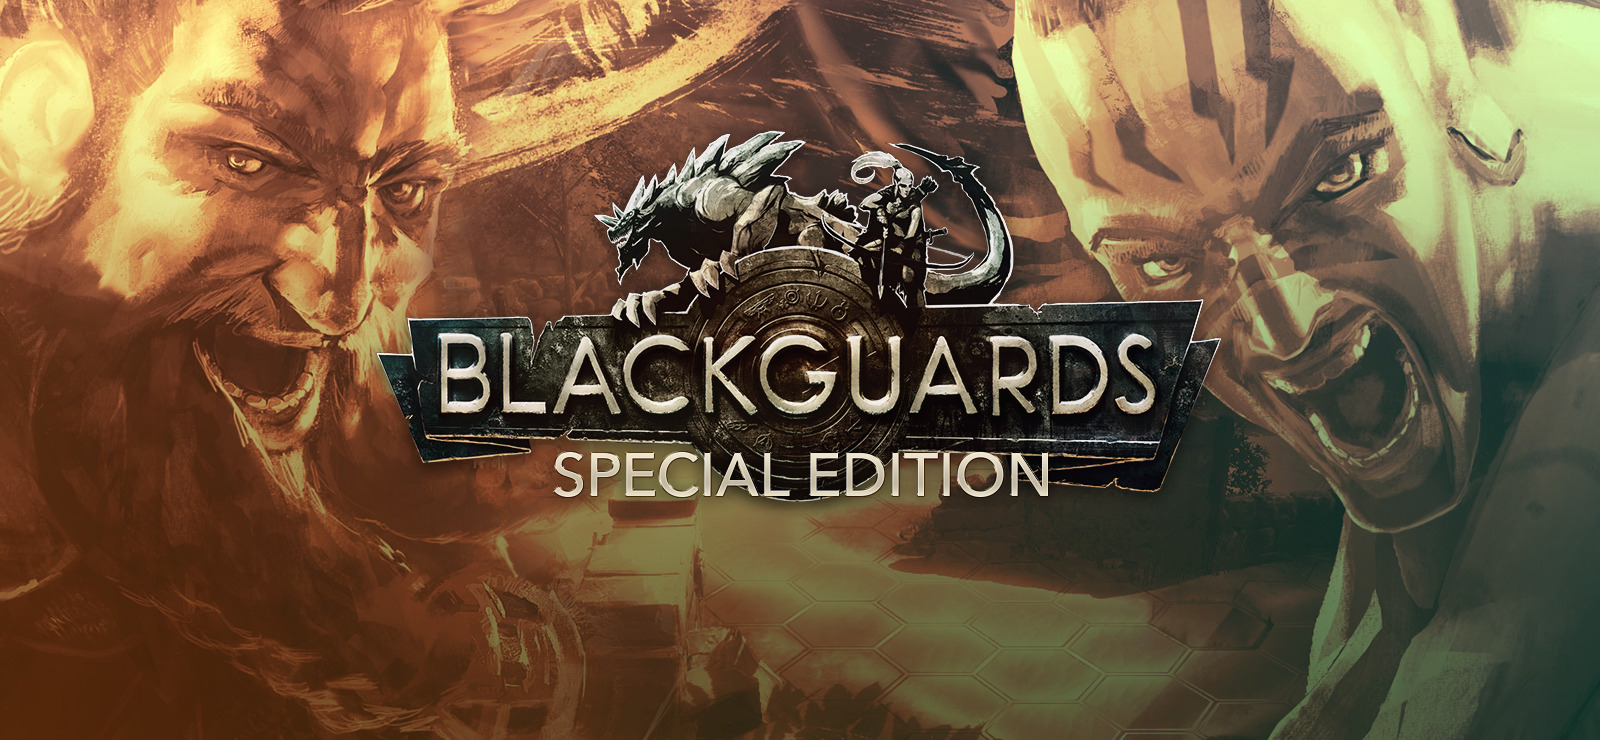 Análise: Blackguards (PC) é uma aventura com muita ação, magia e tática -  GameBlast